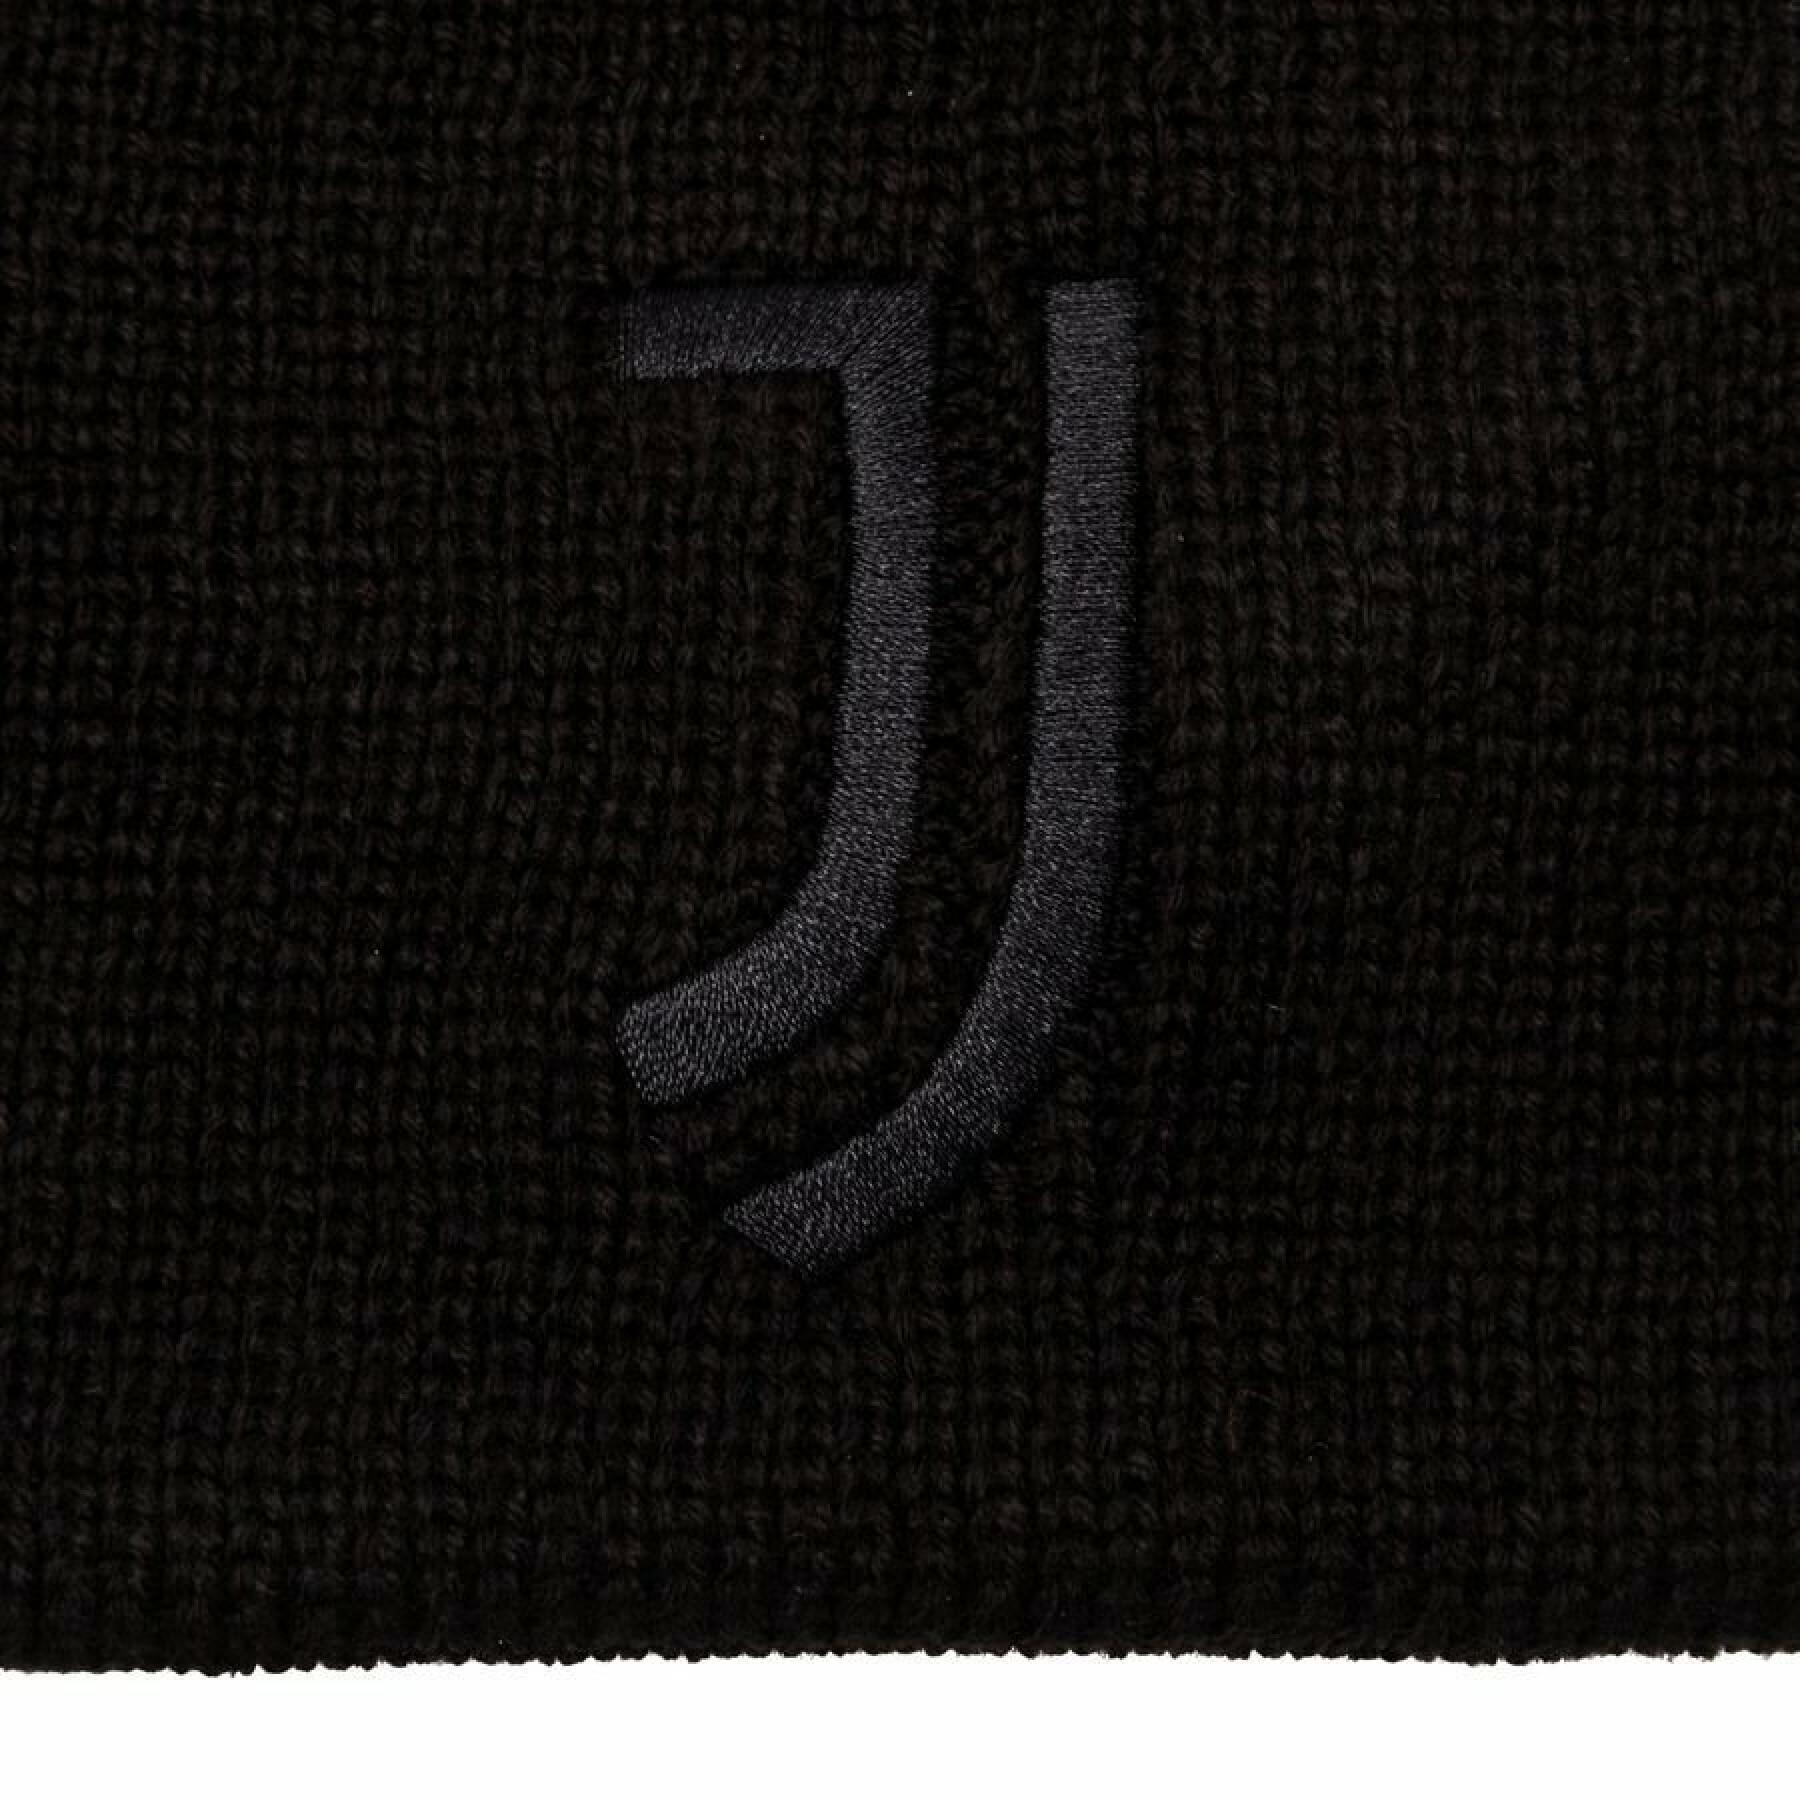 Boné Juventus Woolie